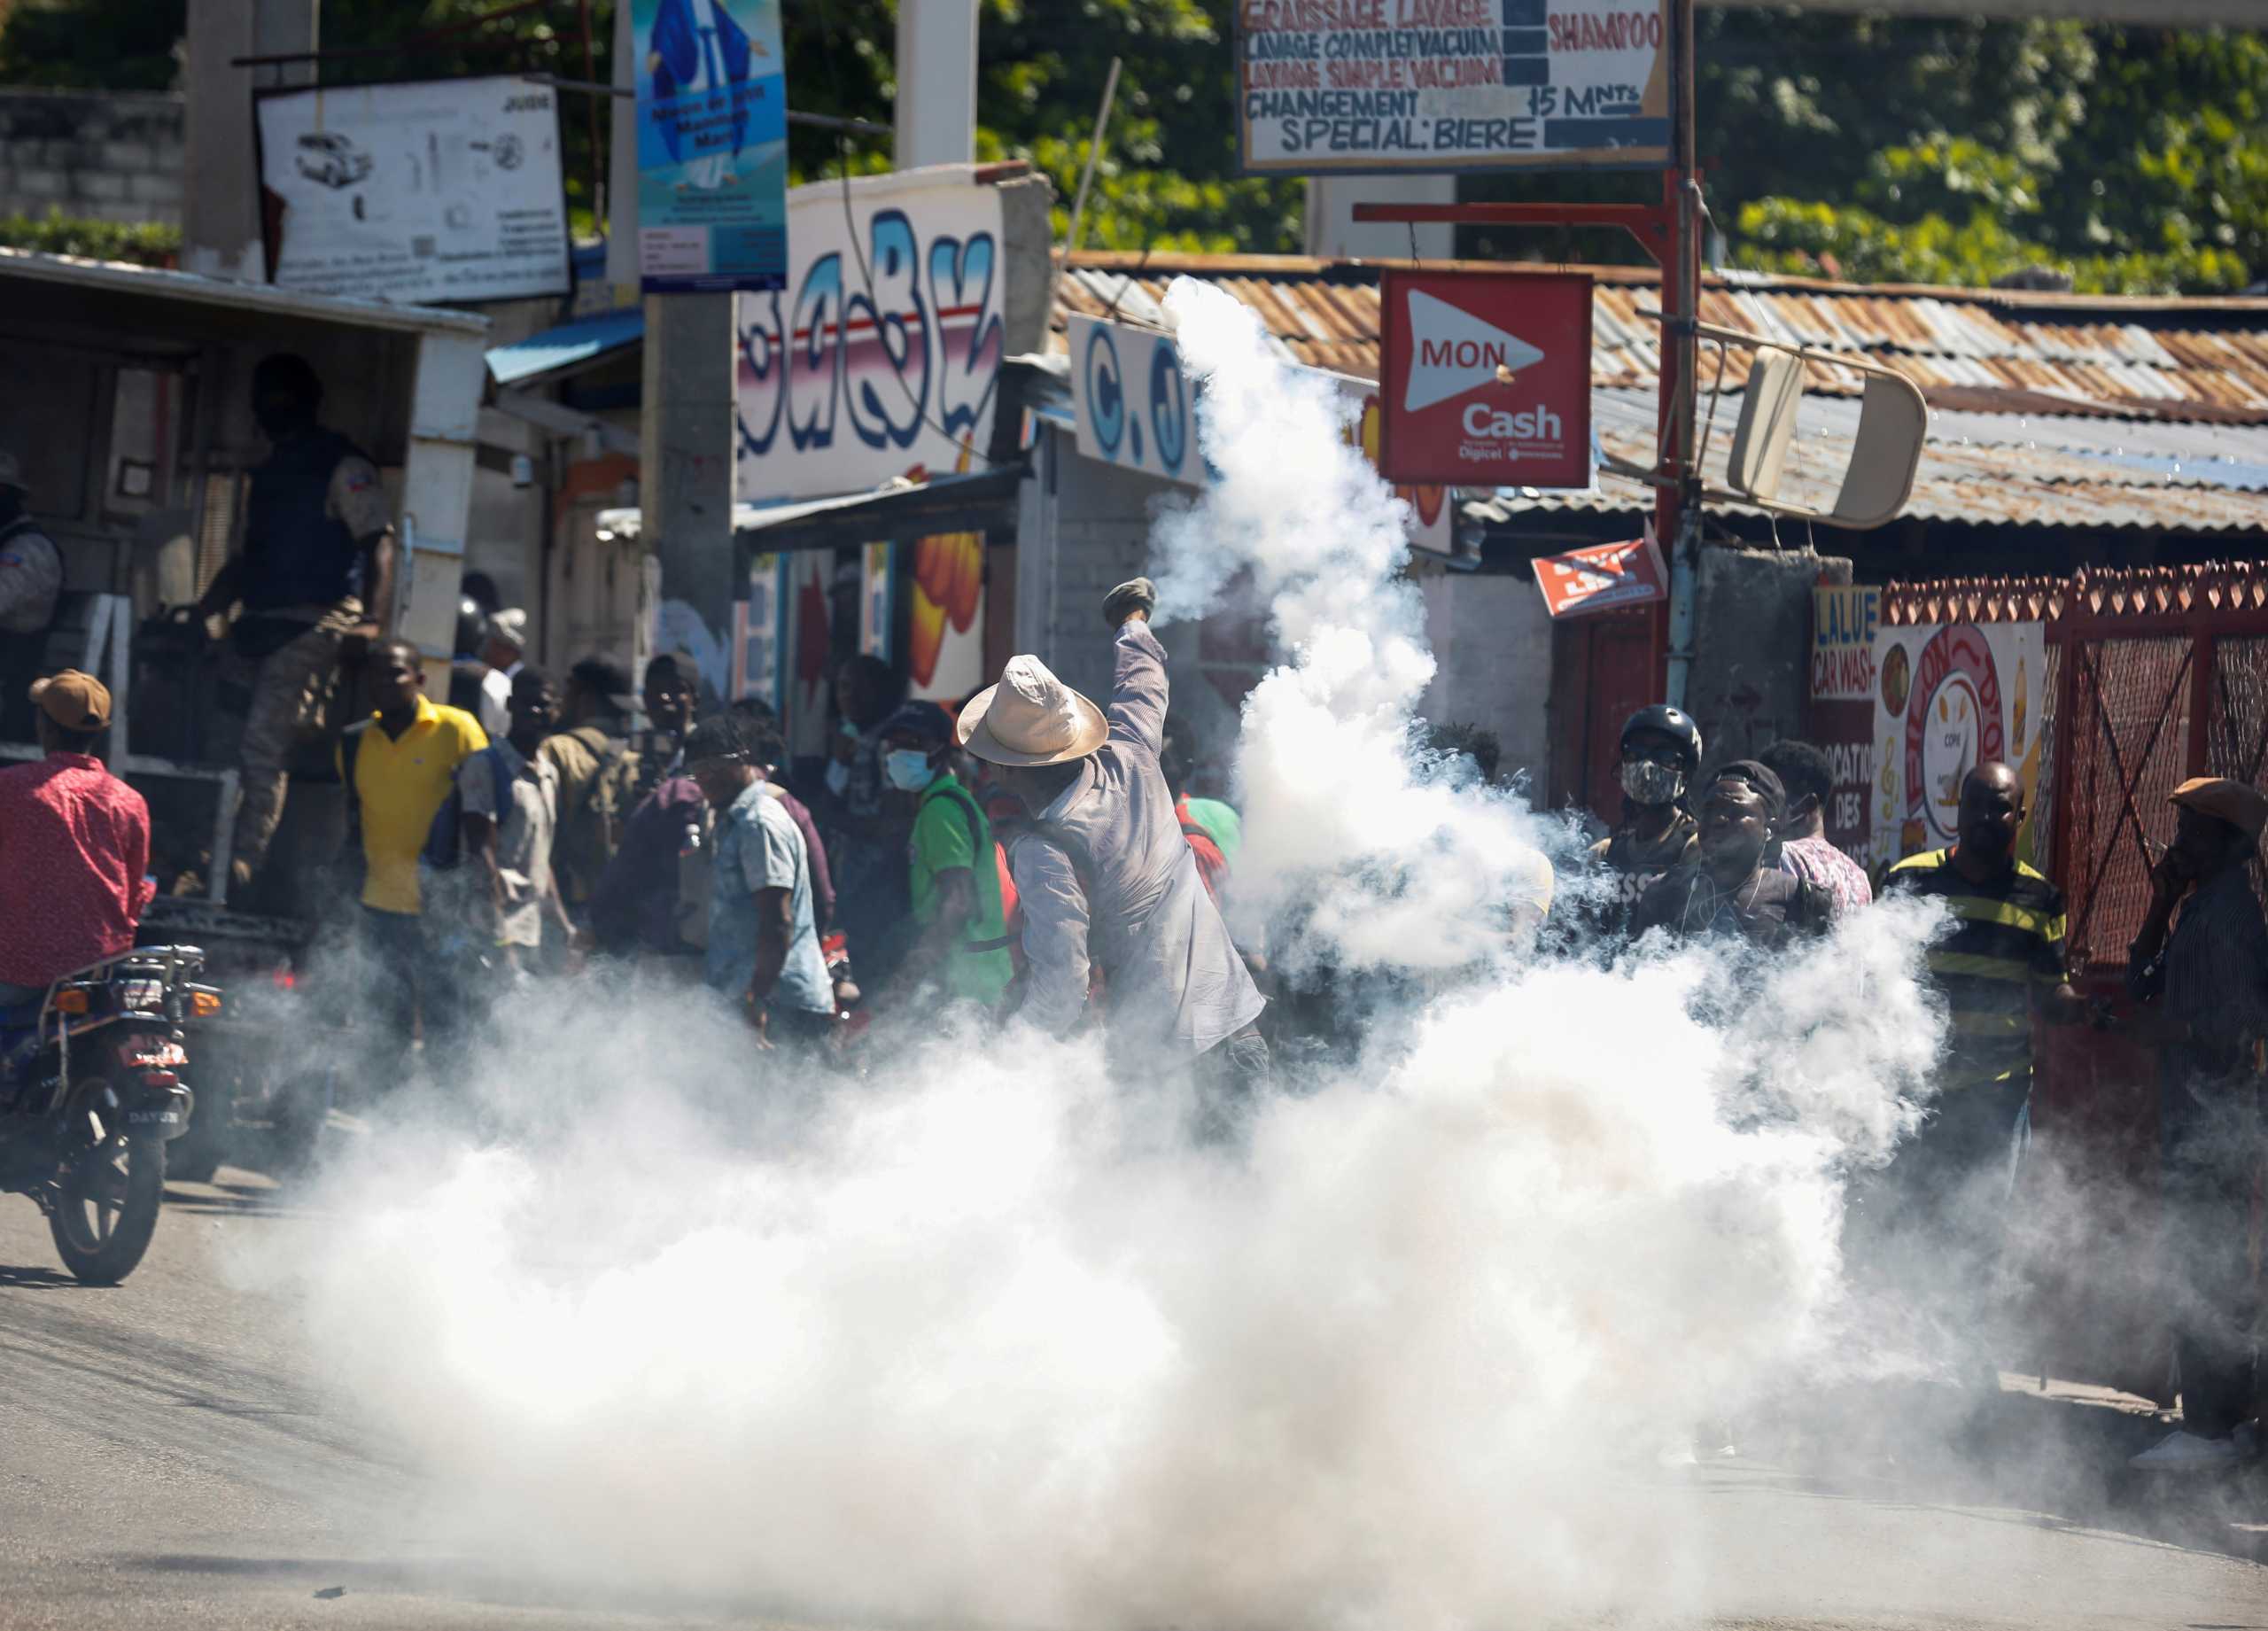 Αϊτή: Χημικά και πυροβολισμοί στις διαδηλώσεις εναντίον του Ζοβενέλ Μοΐζ (pics)